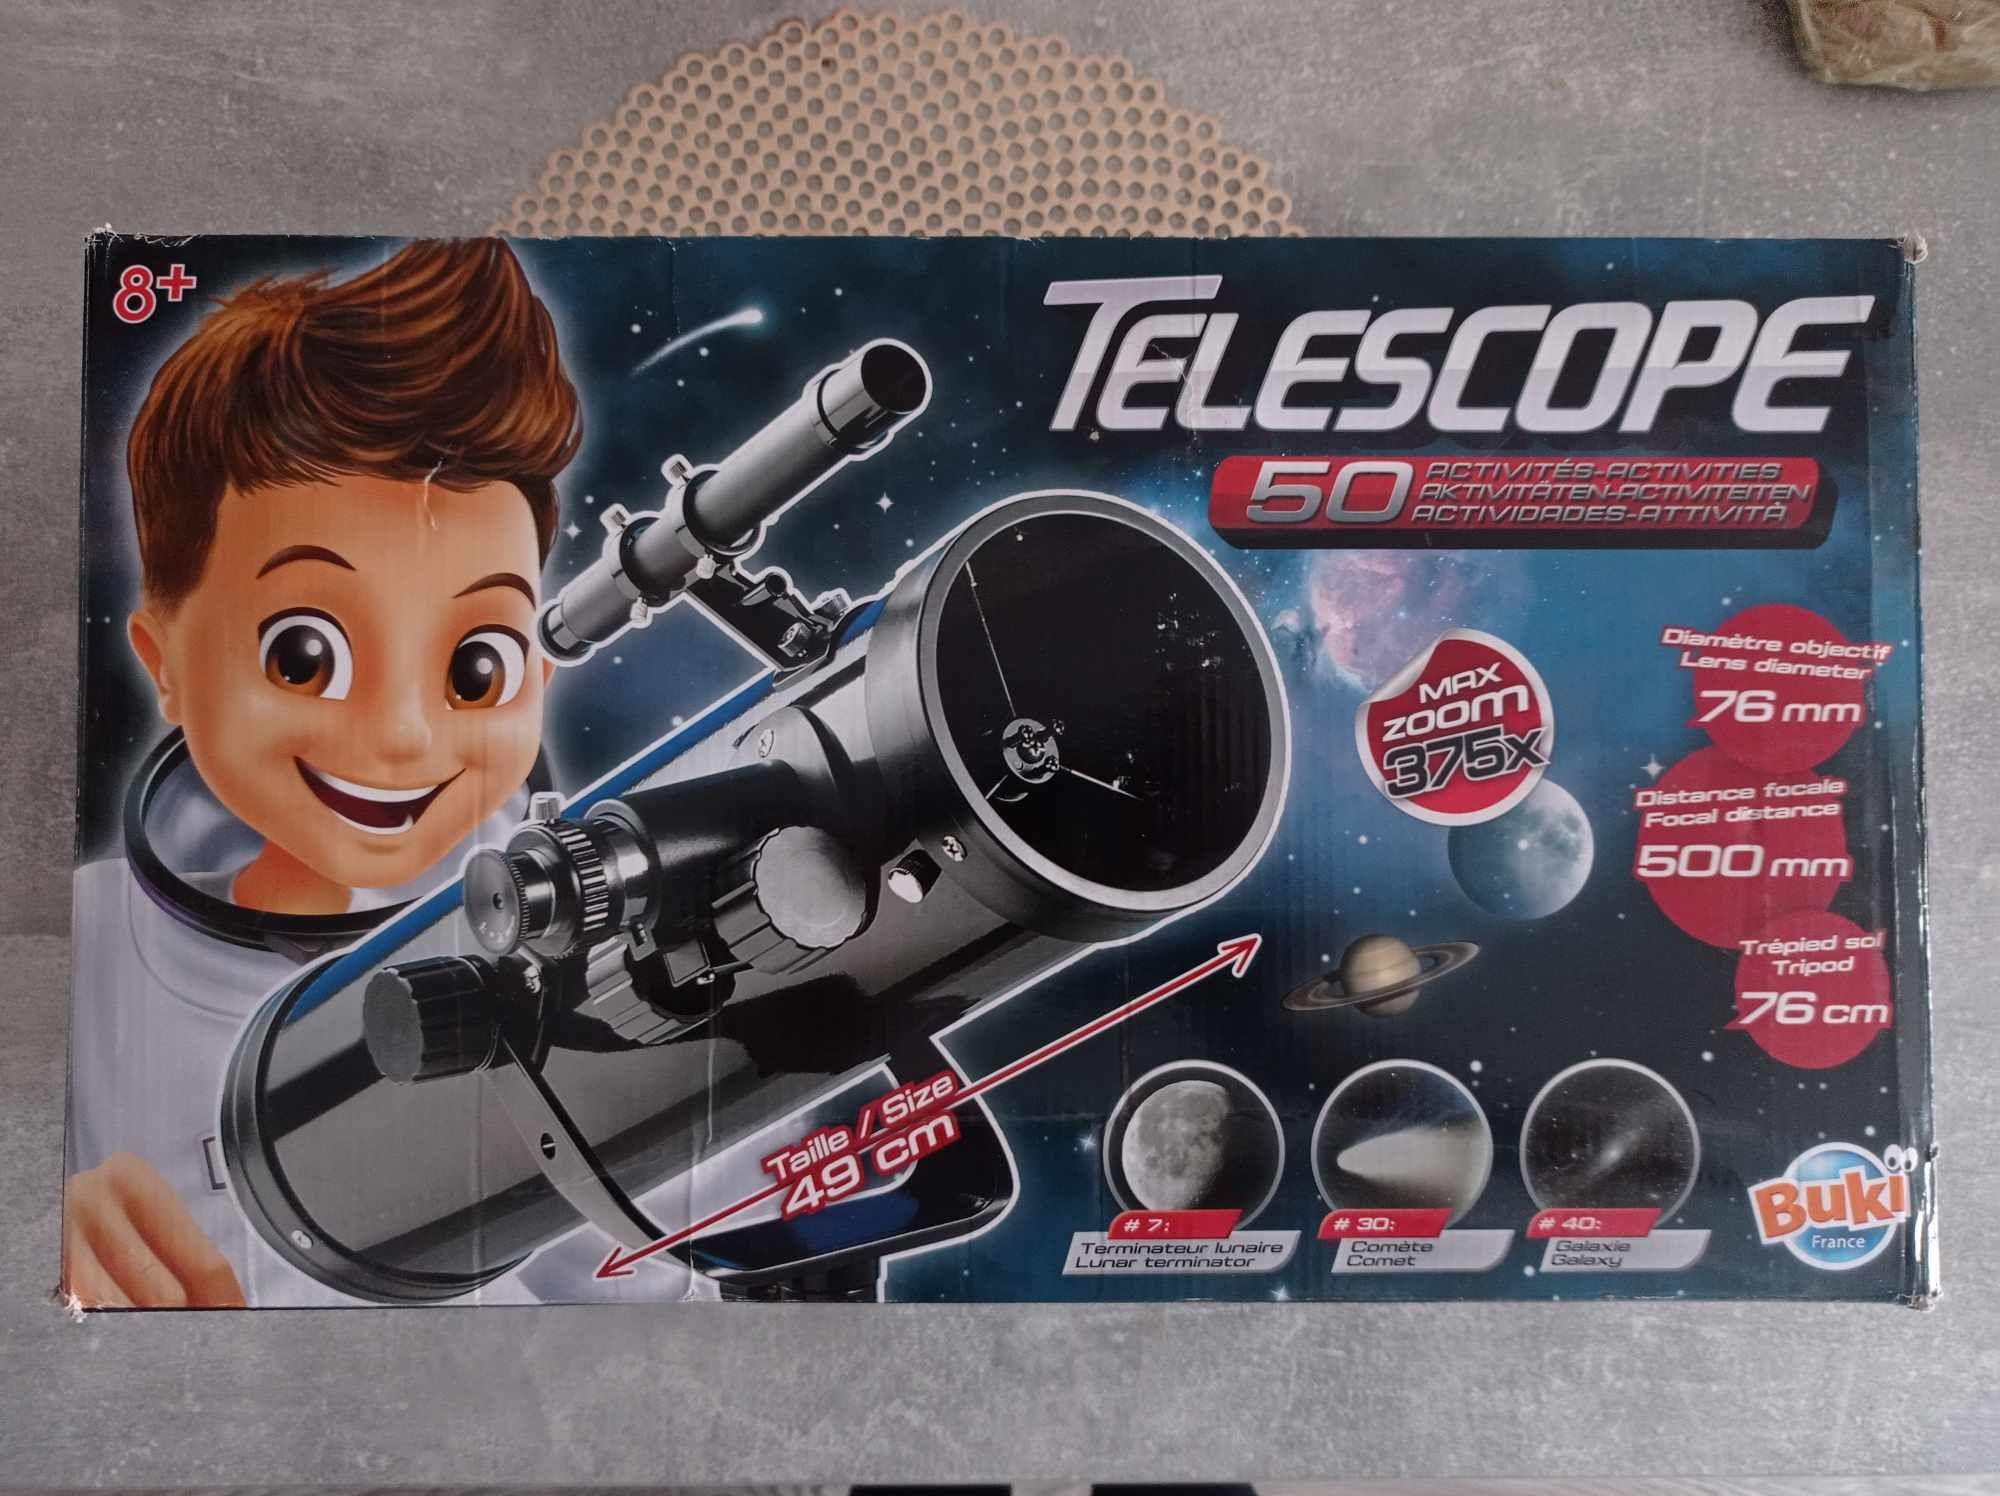 Sprzedam teleskop dla dziecka 8 lat